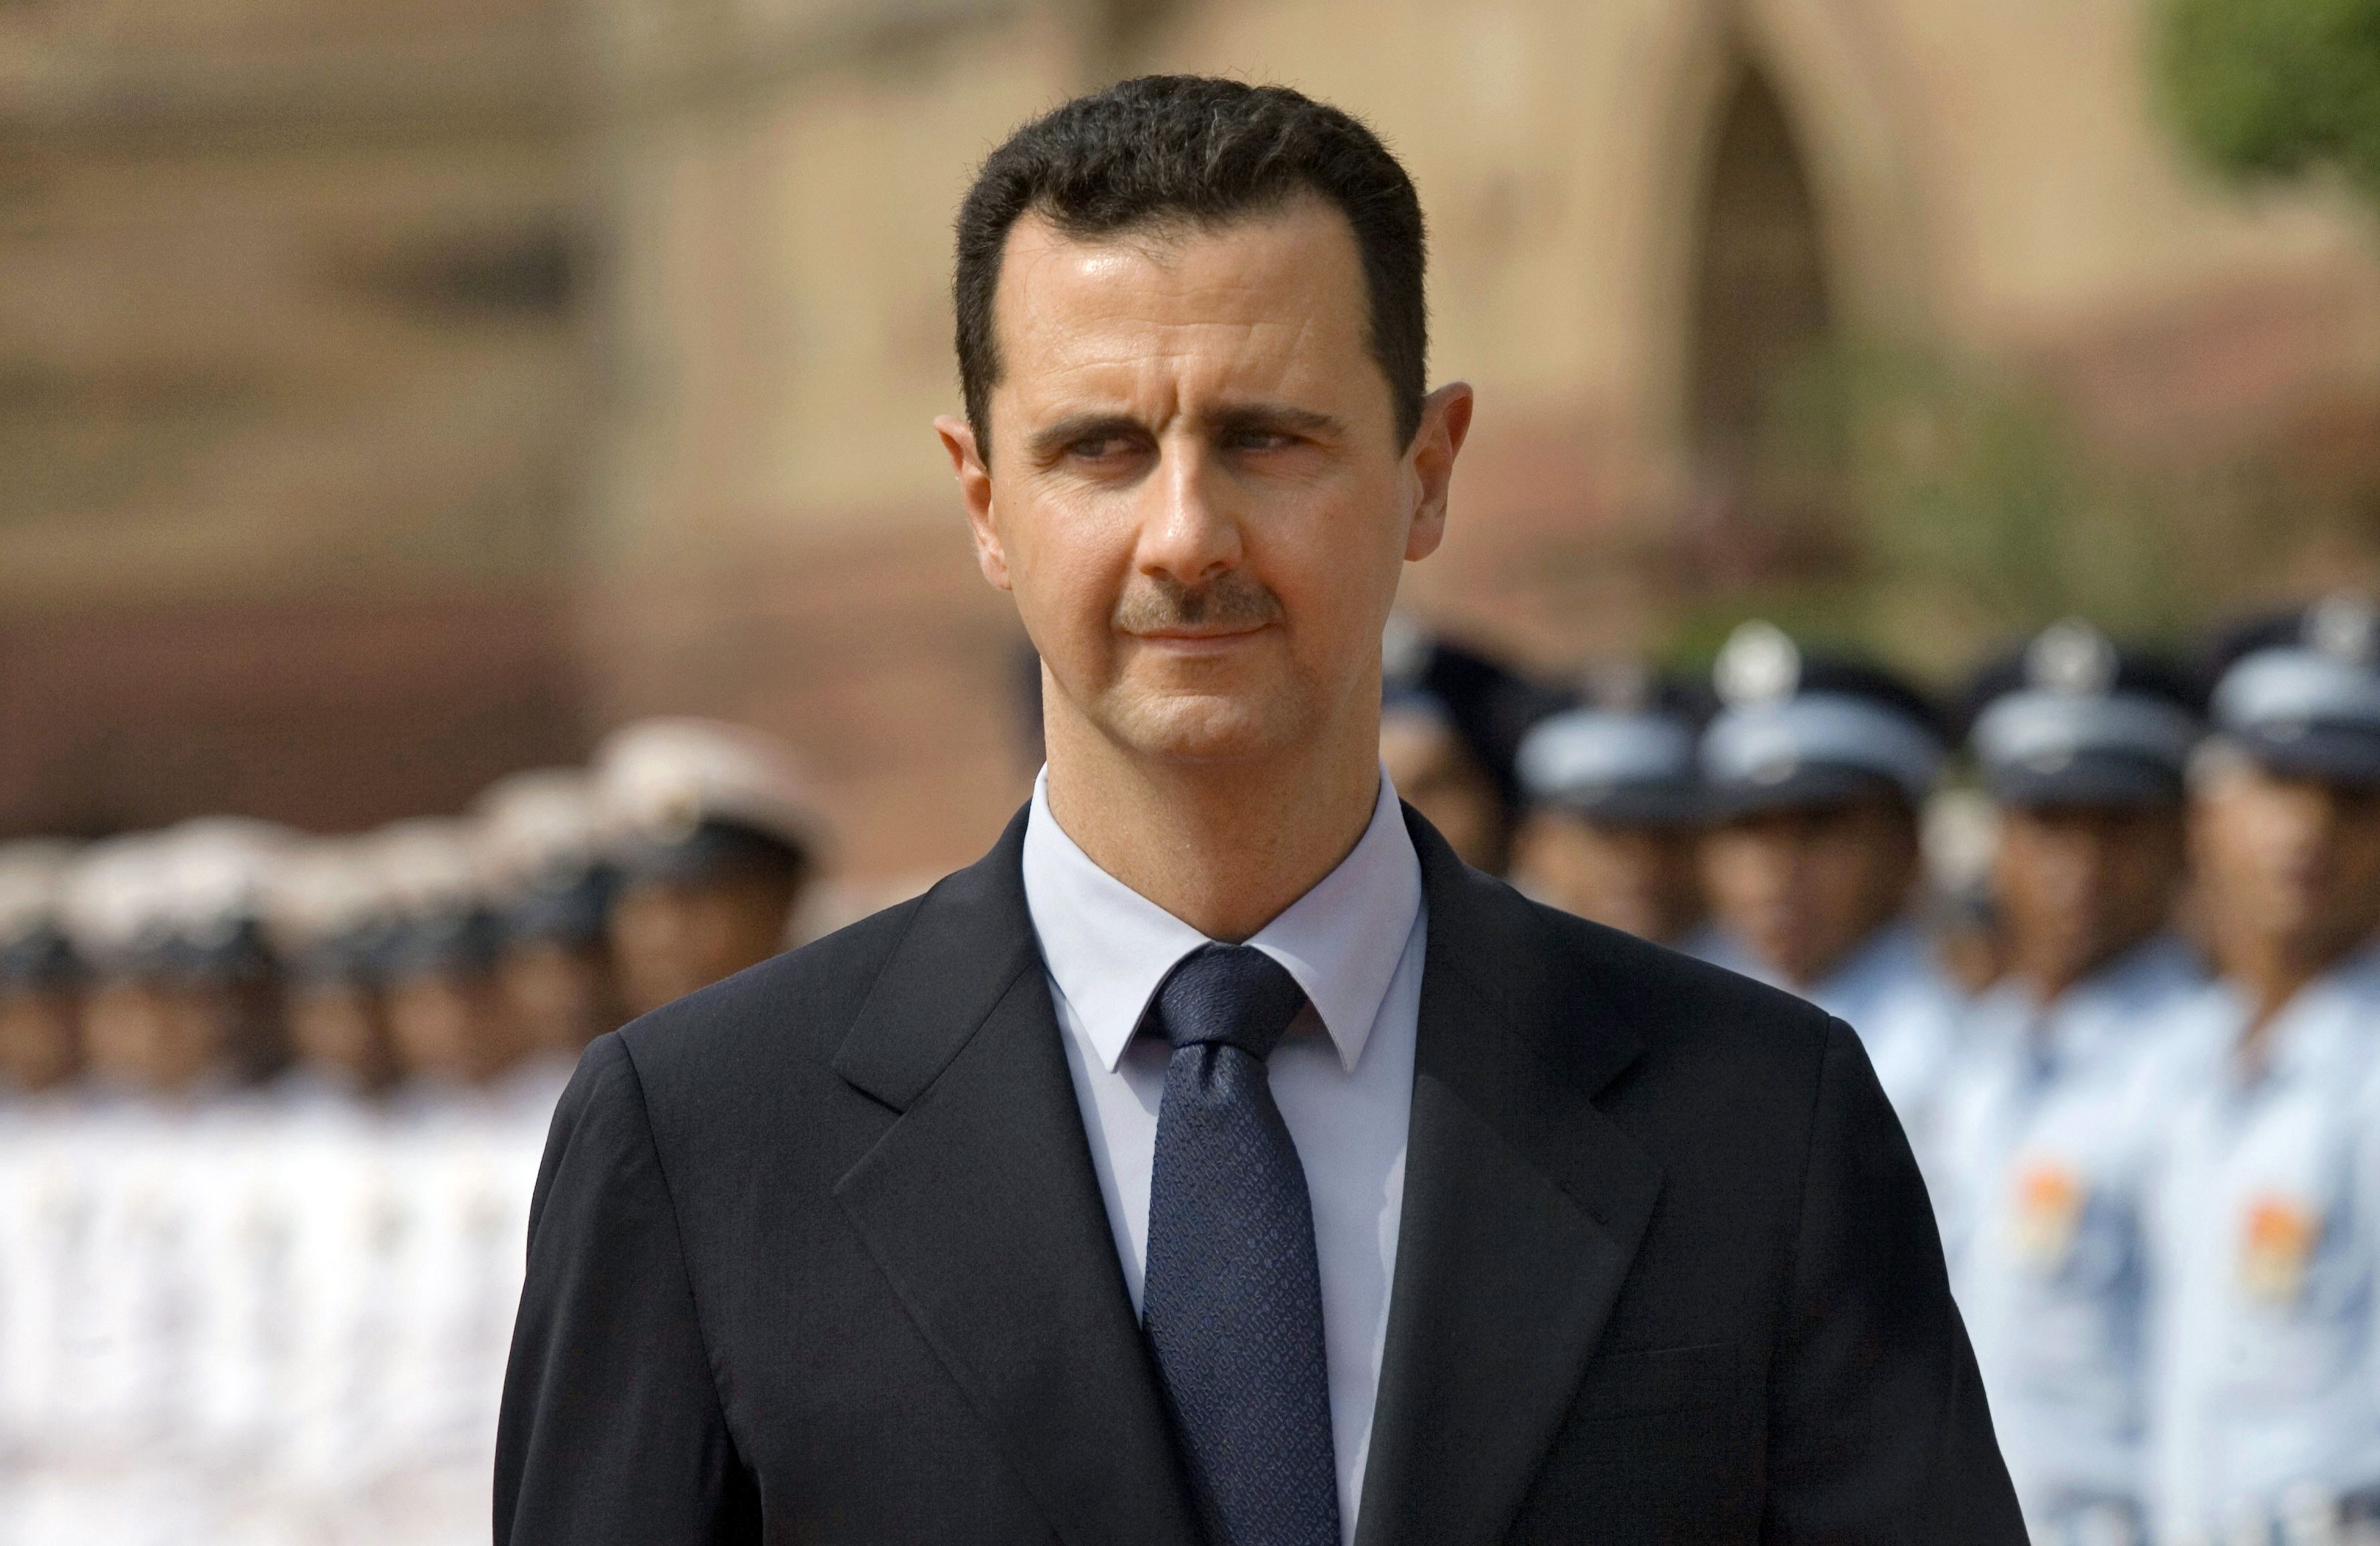 Bashar al-Assad - Syriens president sedan 2000 då han efterträdde sin avlidne far, Hafez al-Assad. Han ansågs av många vara en ledare som skulle förändra Syrien till det bättre, på många sätt. Men det politiska förtrycket och försummandet av mänskliga rät